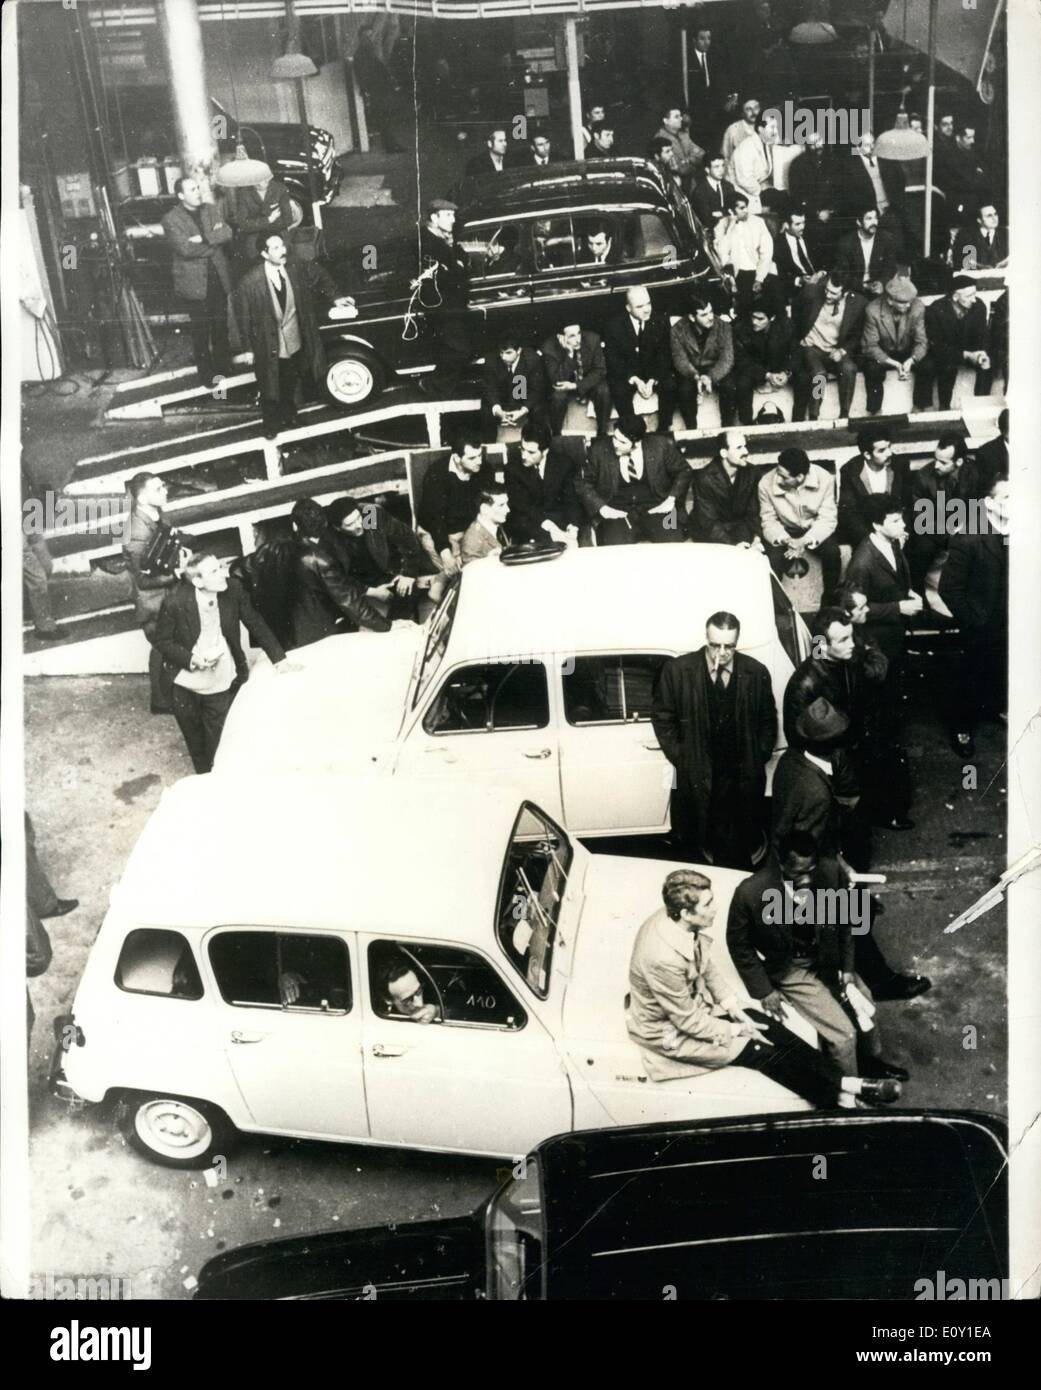 Mai 05, 1968 - Les travailleurs occupent l'usine Renault. : depuis le jeudi soir, le drapeau rouge a volé sur les usines Renault à Boulogne Billan cour et ailleurs. Les travailleurs sont en grève pour une durée indéterminée et occupent les bâtiments. Photo montre la scène à l'intérieur de l'usine Renault à Boulogne Billan cour lors d'une réunion de l'O.G.T. Banque D'Images